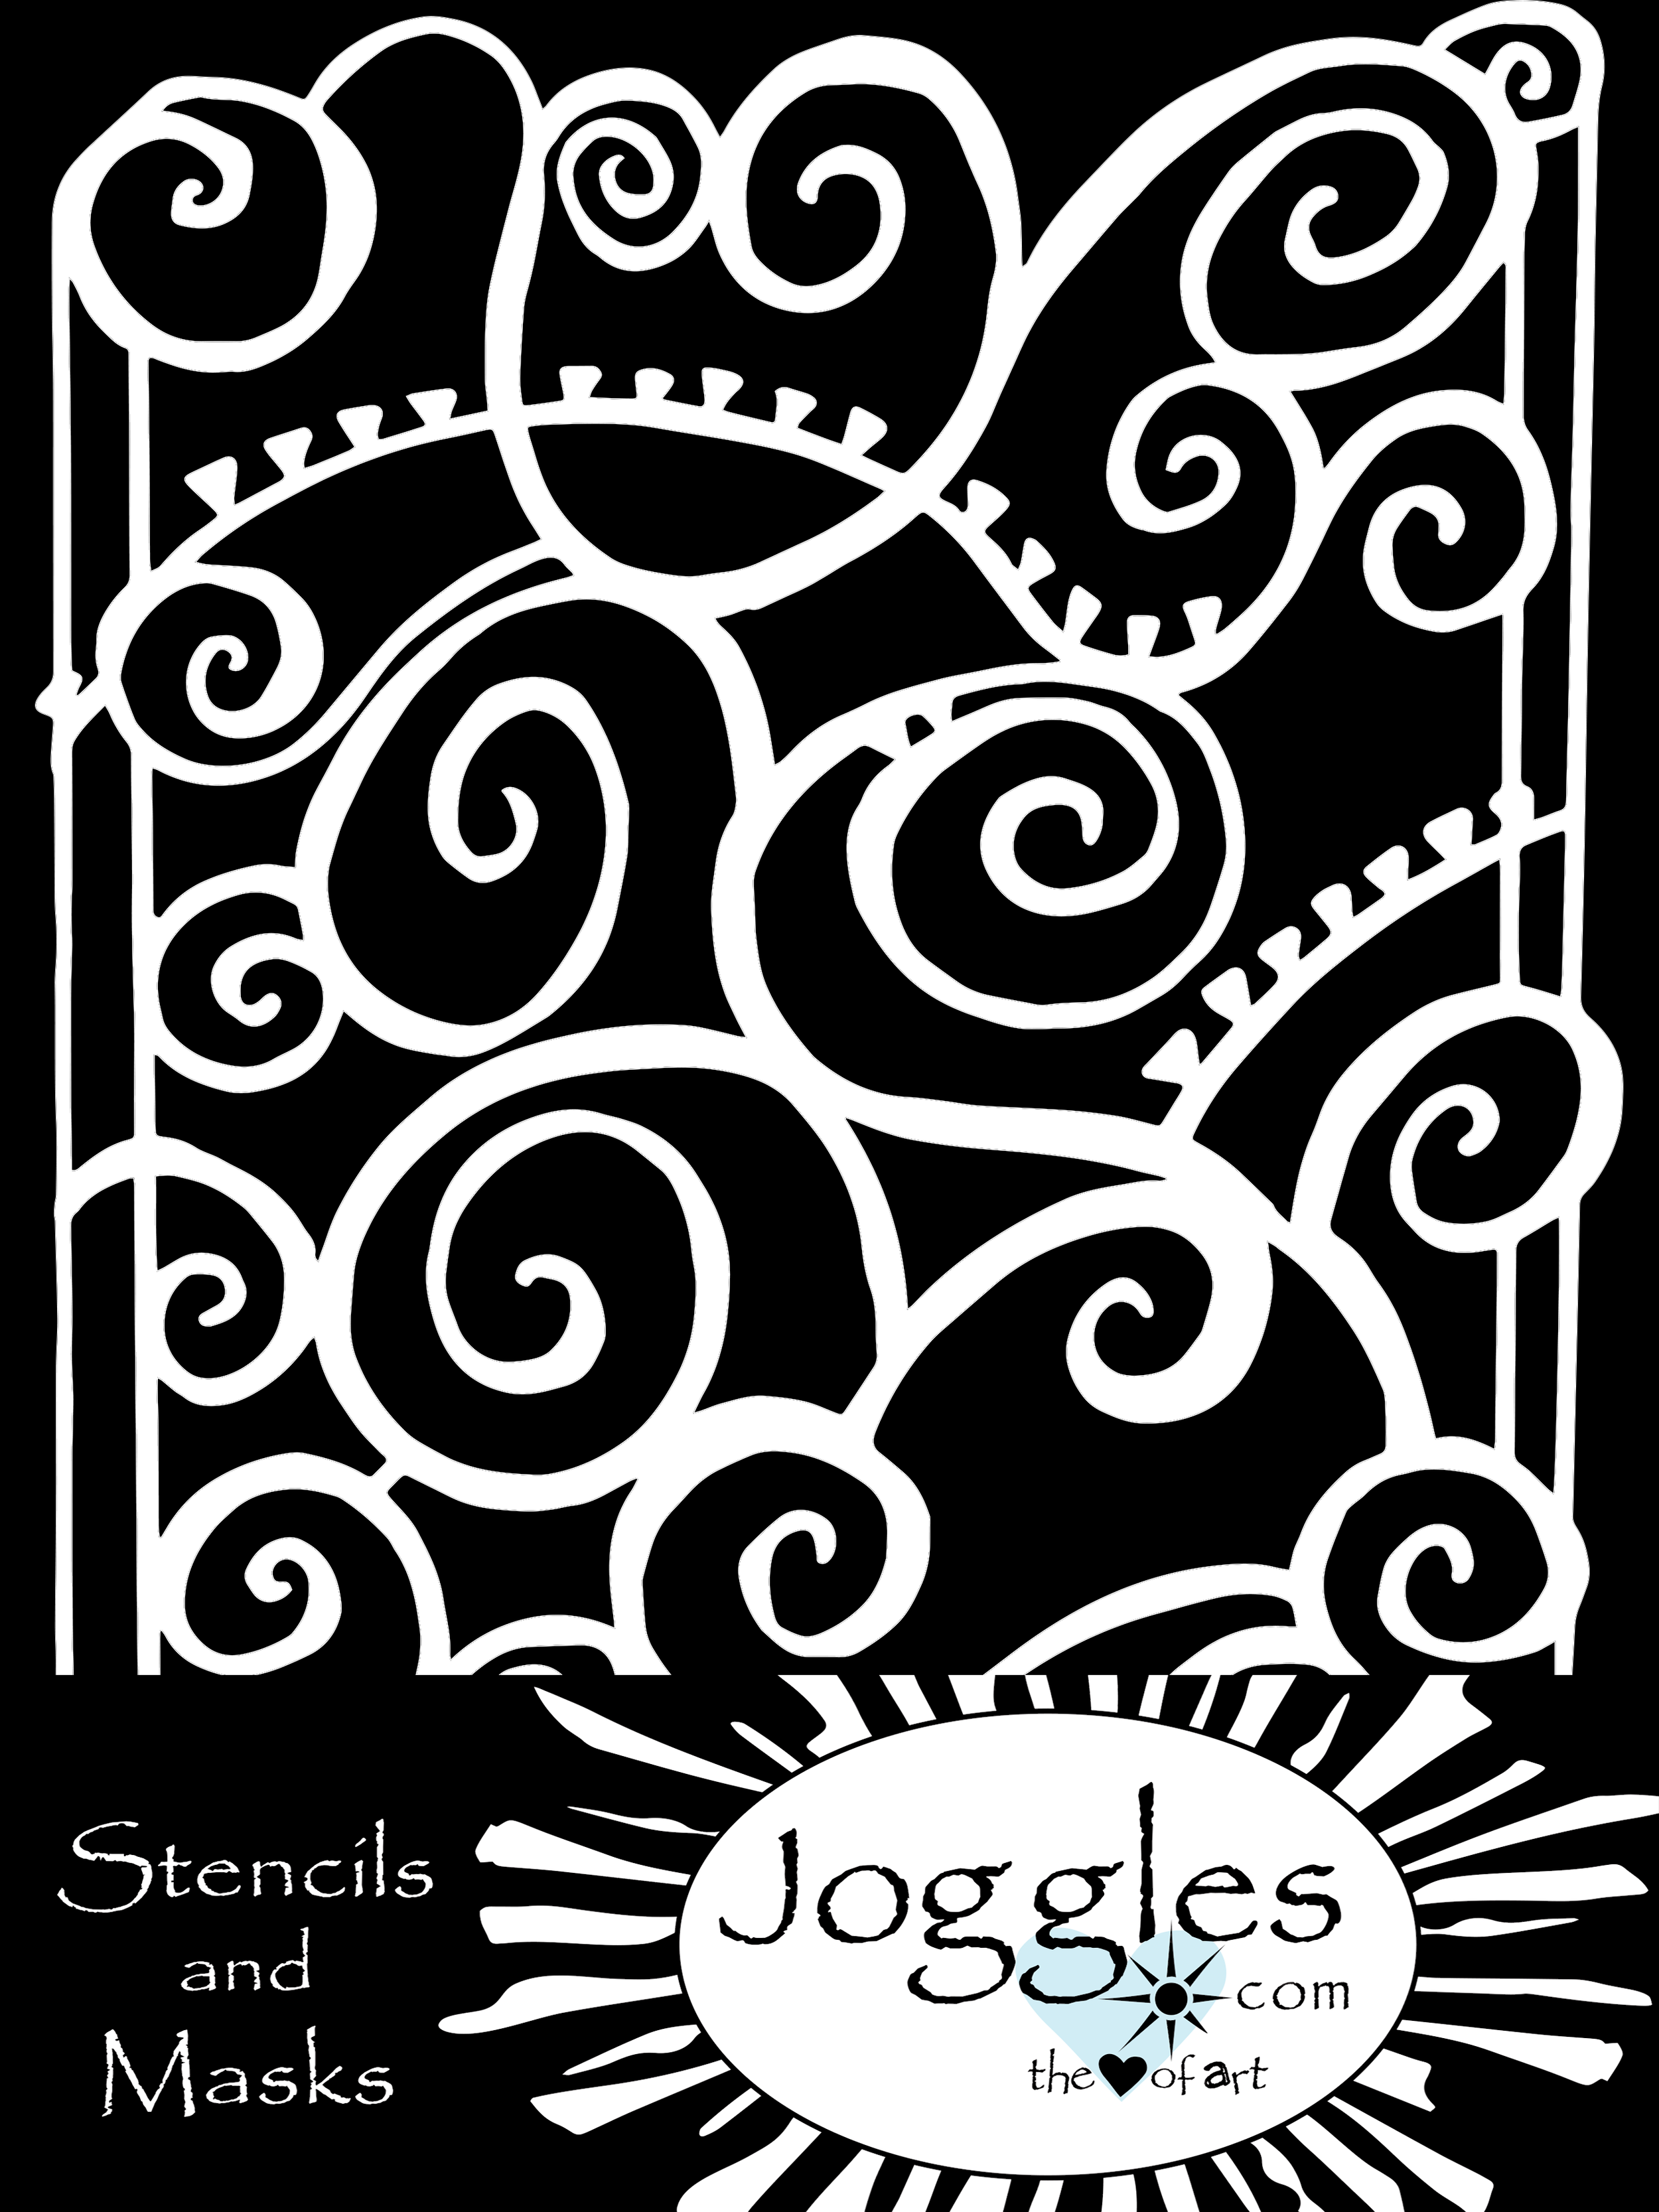 Joggles Mixed Media Art Supplies